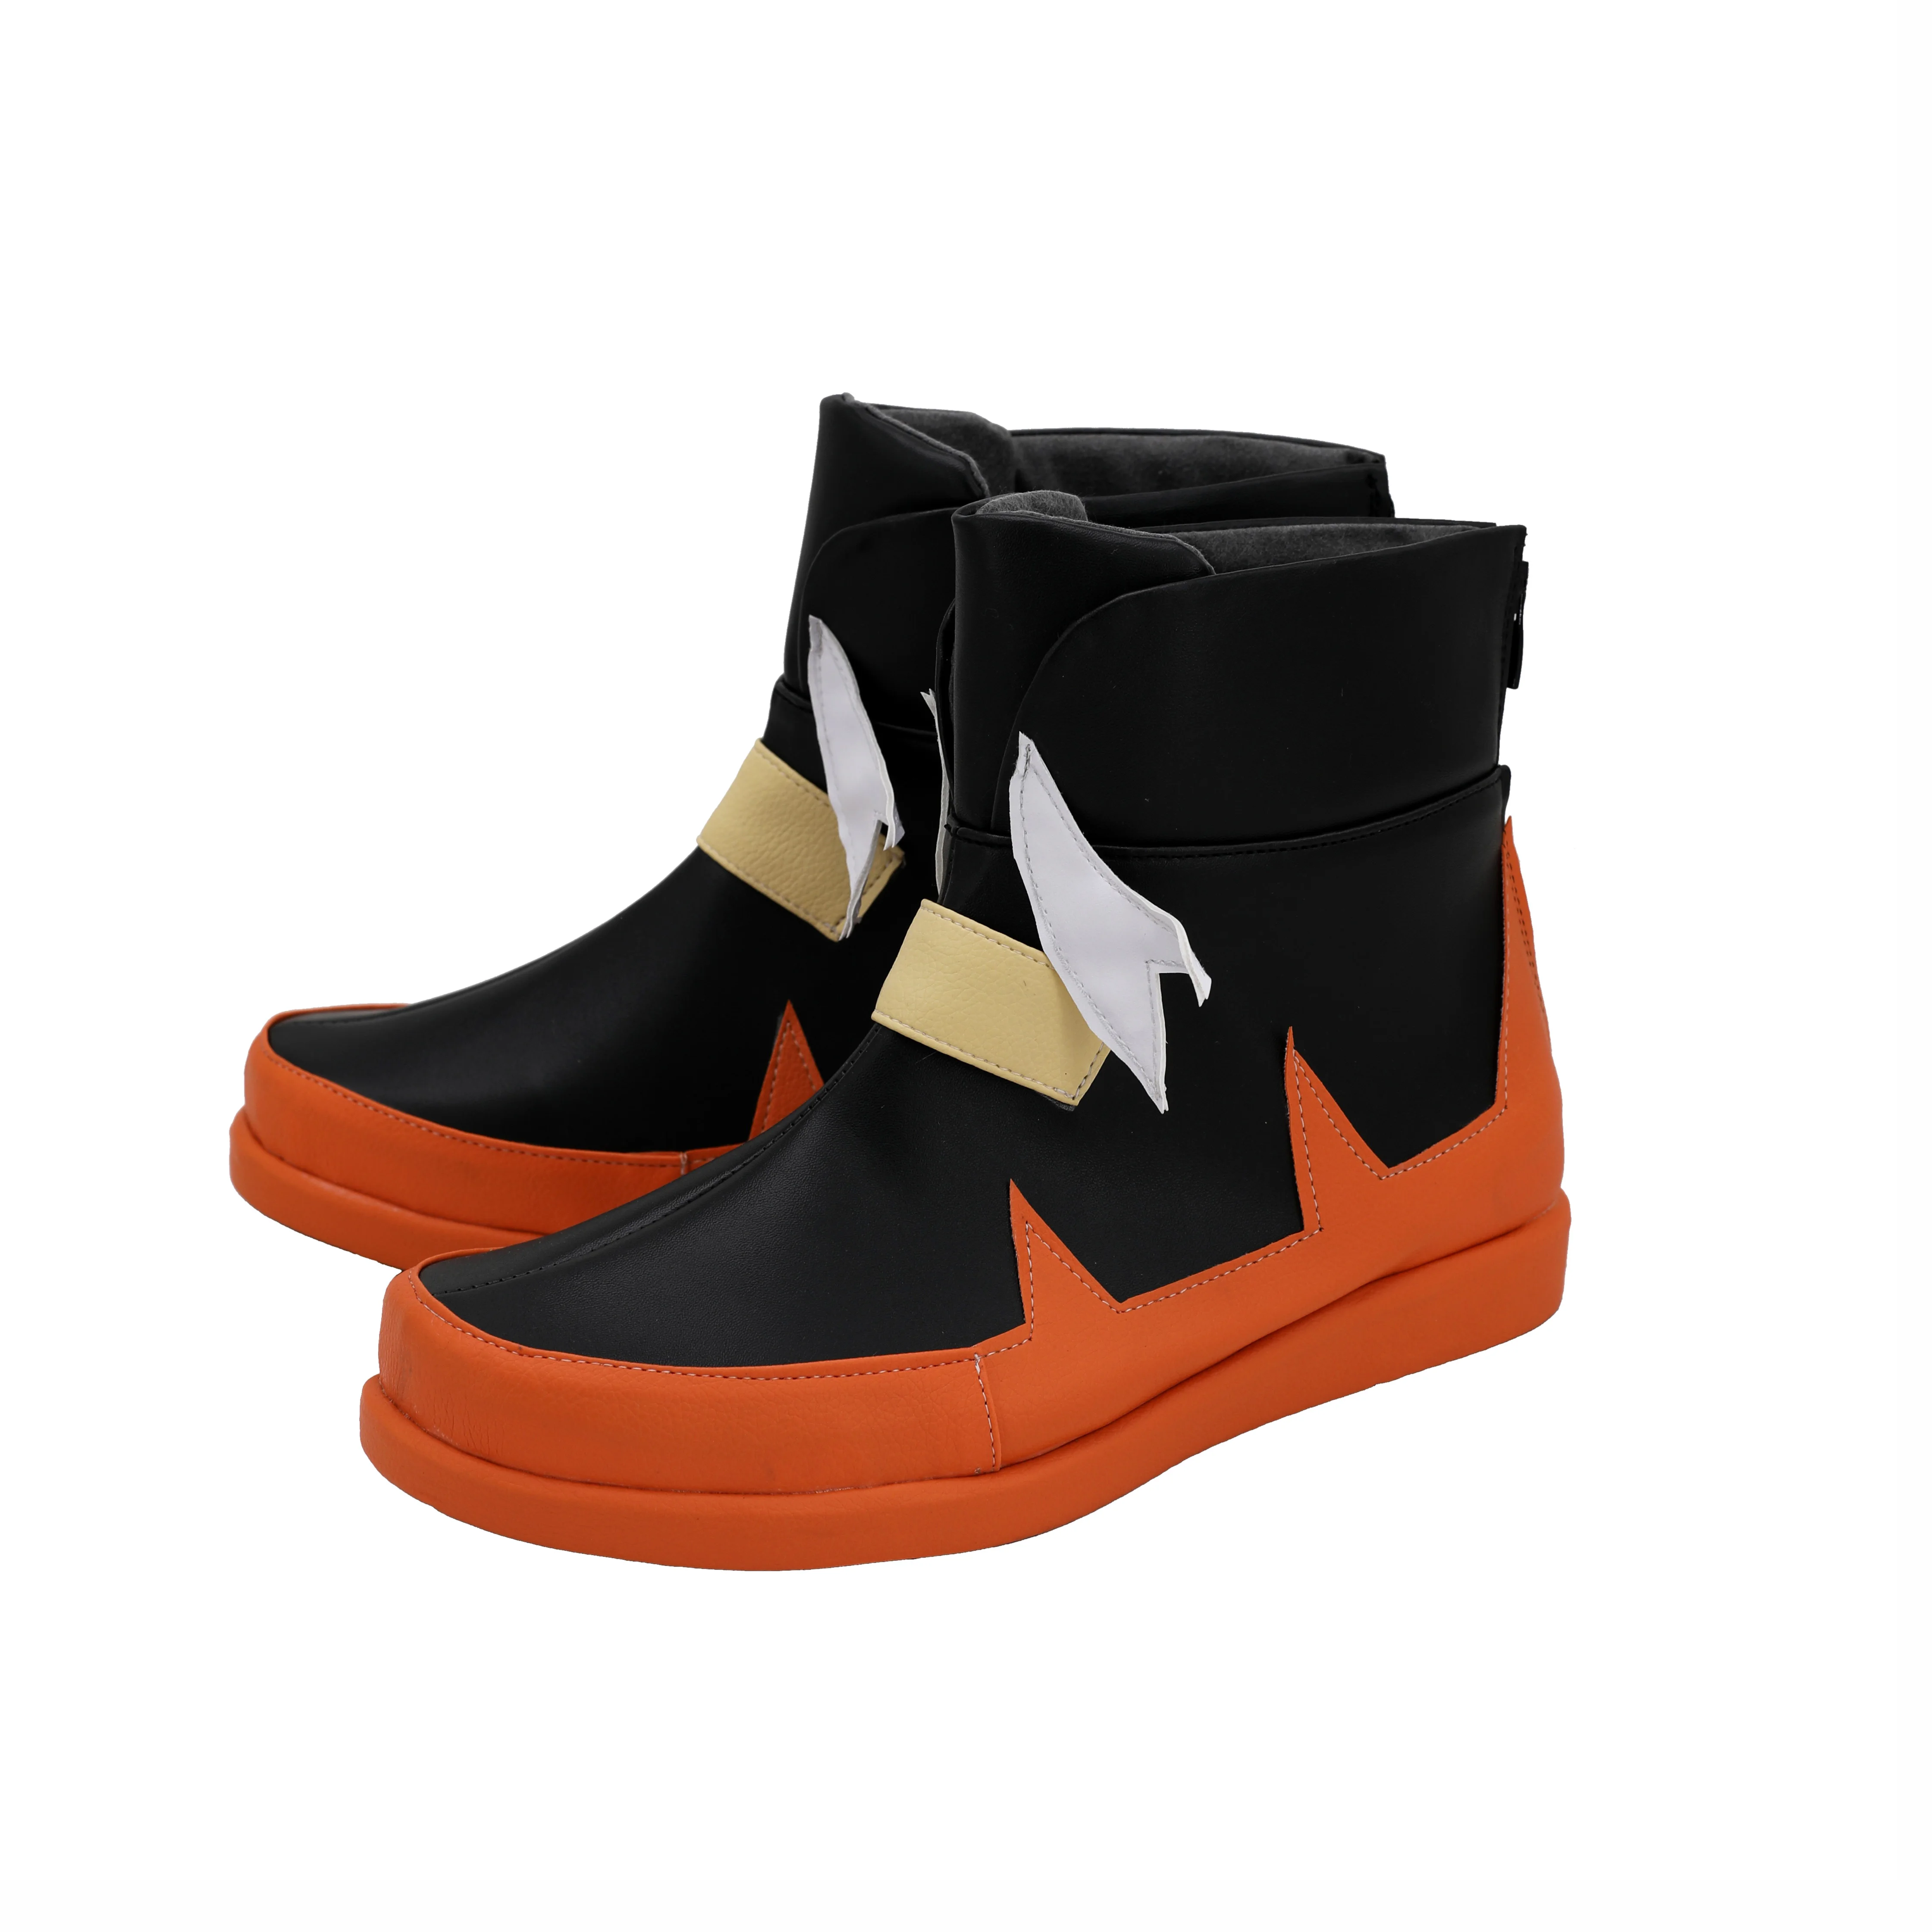 Обувь в стиле аниме «Покемон Меч Щит Райхан»; ботинки для костюмированной вечеринки